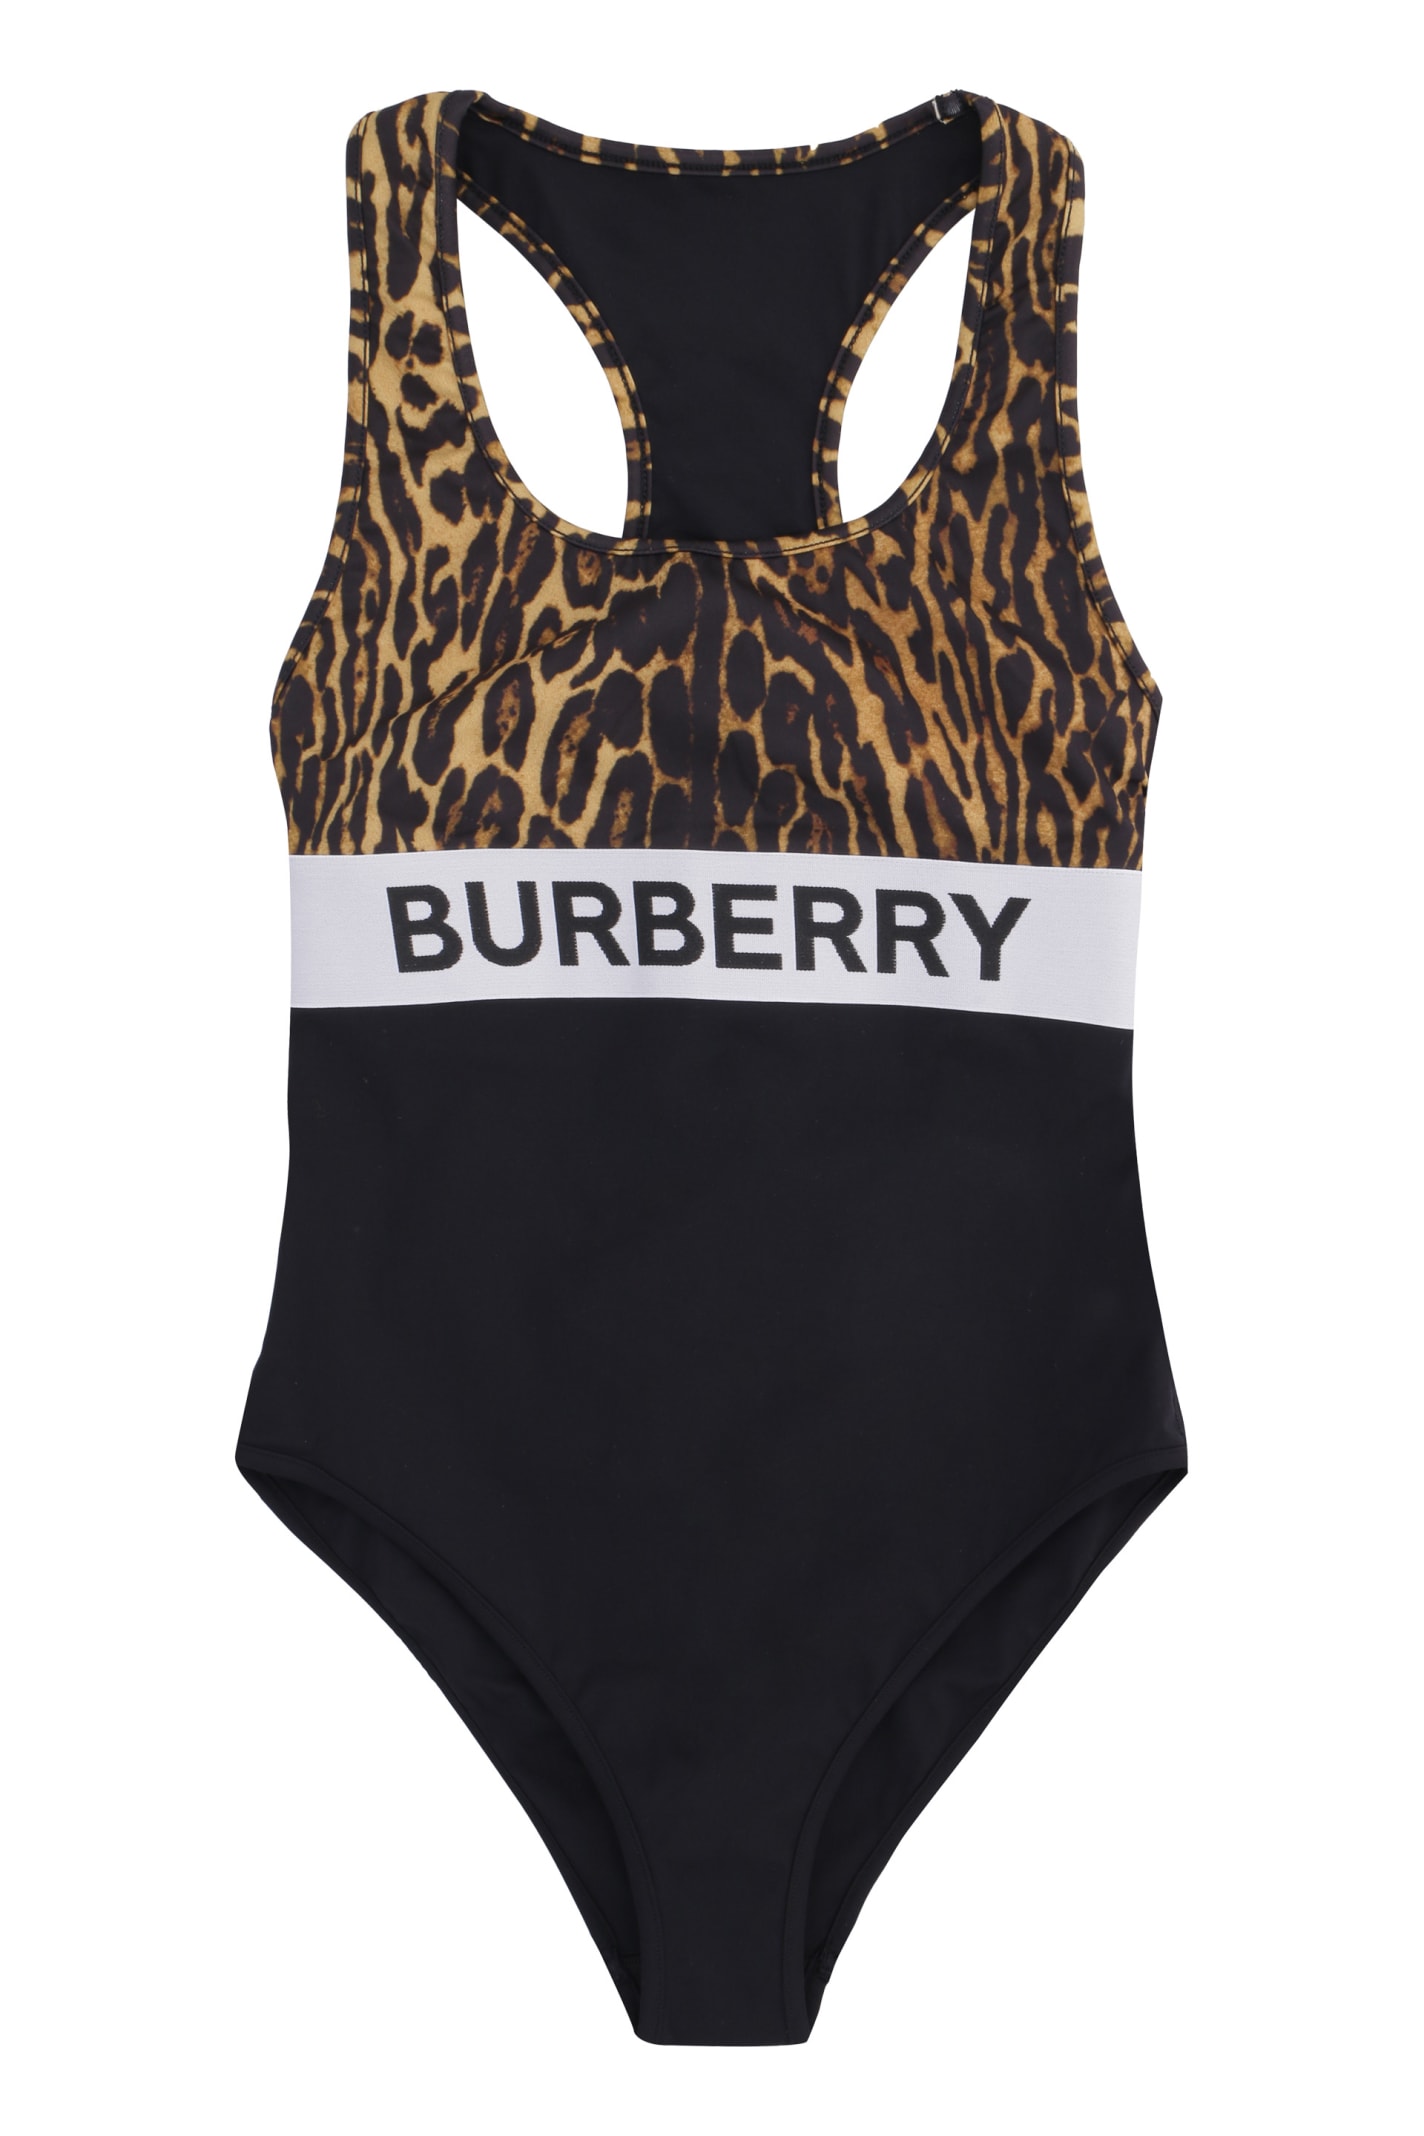 burberry swimsuit sale